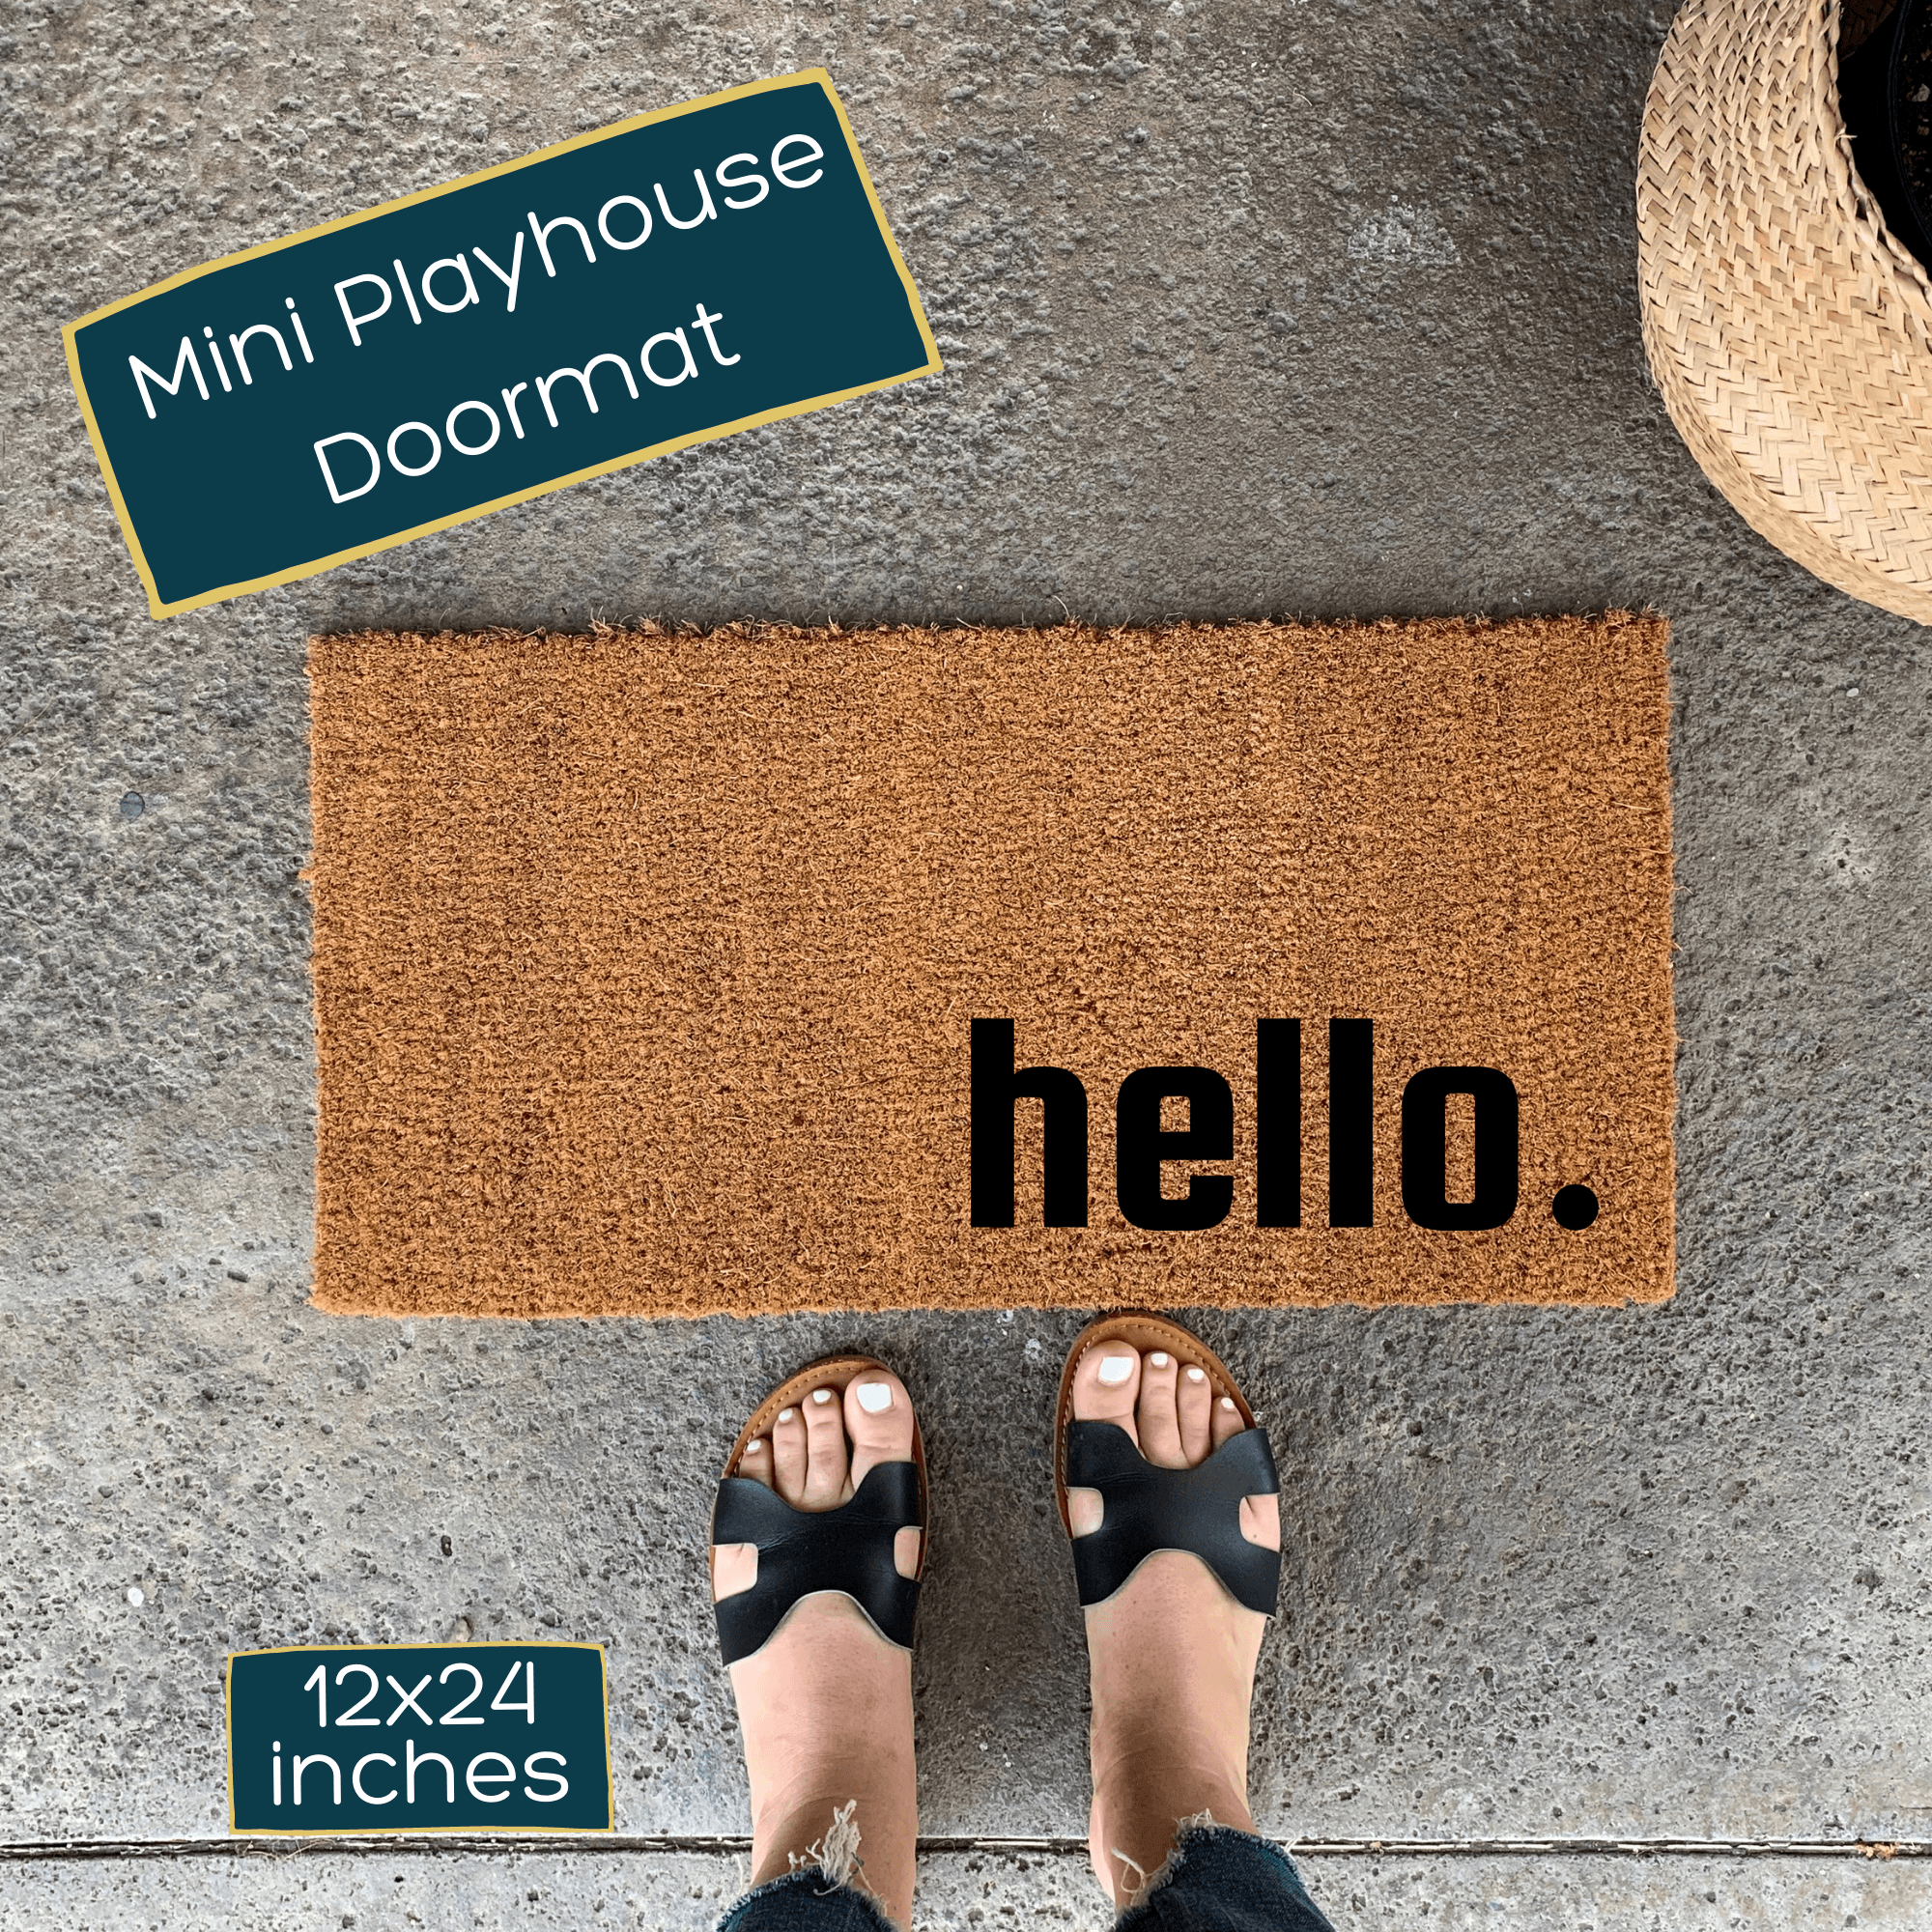 Playhouse Doormat, Skinny Doormat, Mini Doormat, Child's Doormat, Playhouse  Decor, Spring Doormat, Spring Decor, Porch Decor, Custom Doormat 